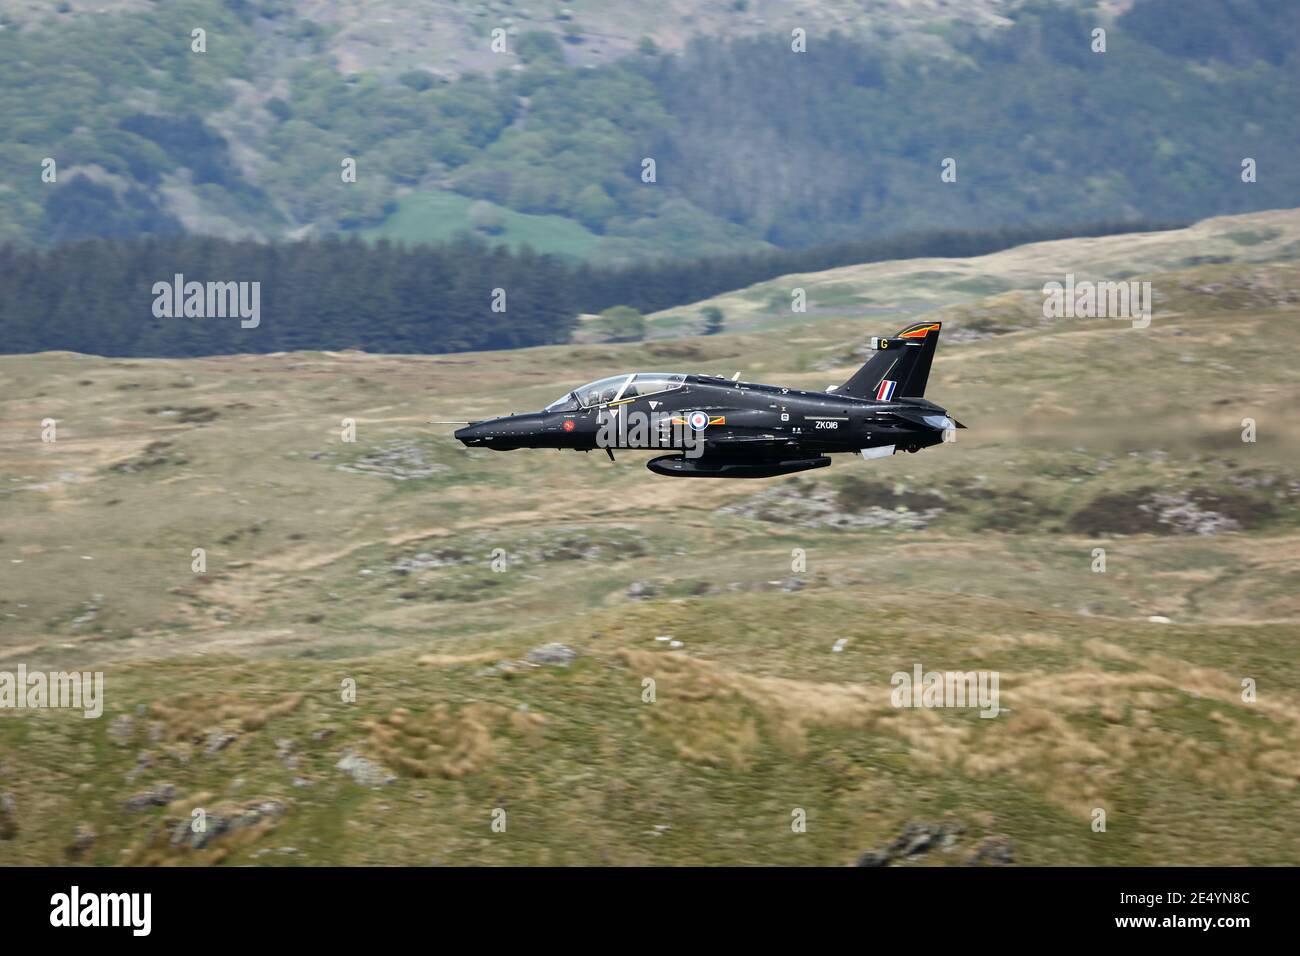 Avion d'entraînement RAF Hawk T2 sur un vol de bas niveau dans la zone de boucle de Mach du pays de Galles, au Royaume-Uni. Banque D'Images